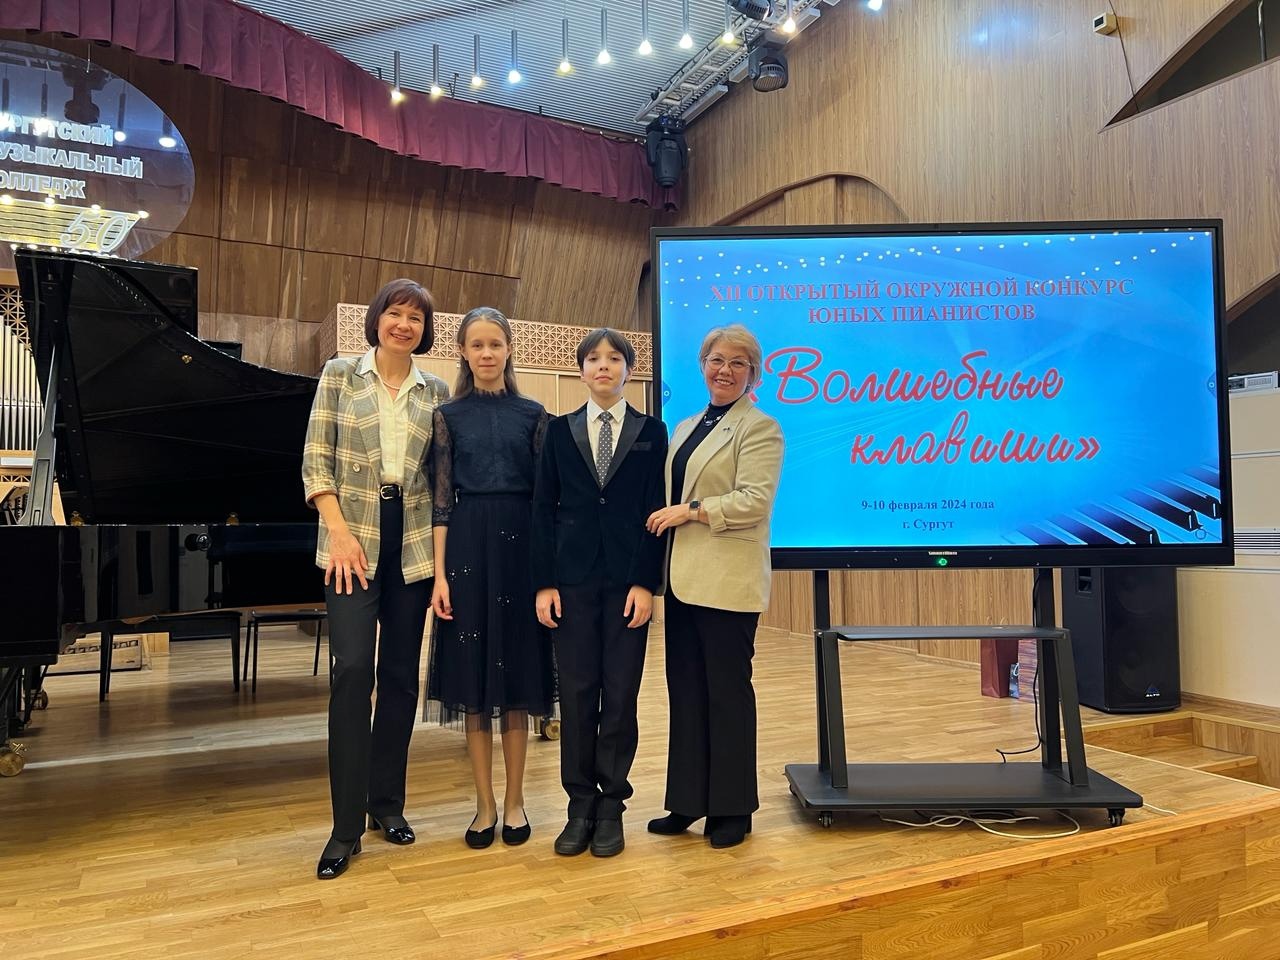 На фото (слева направо): И. Силиванова, Волкова Анна, Барвинский Федор, Федулова И.А.